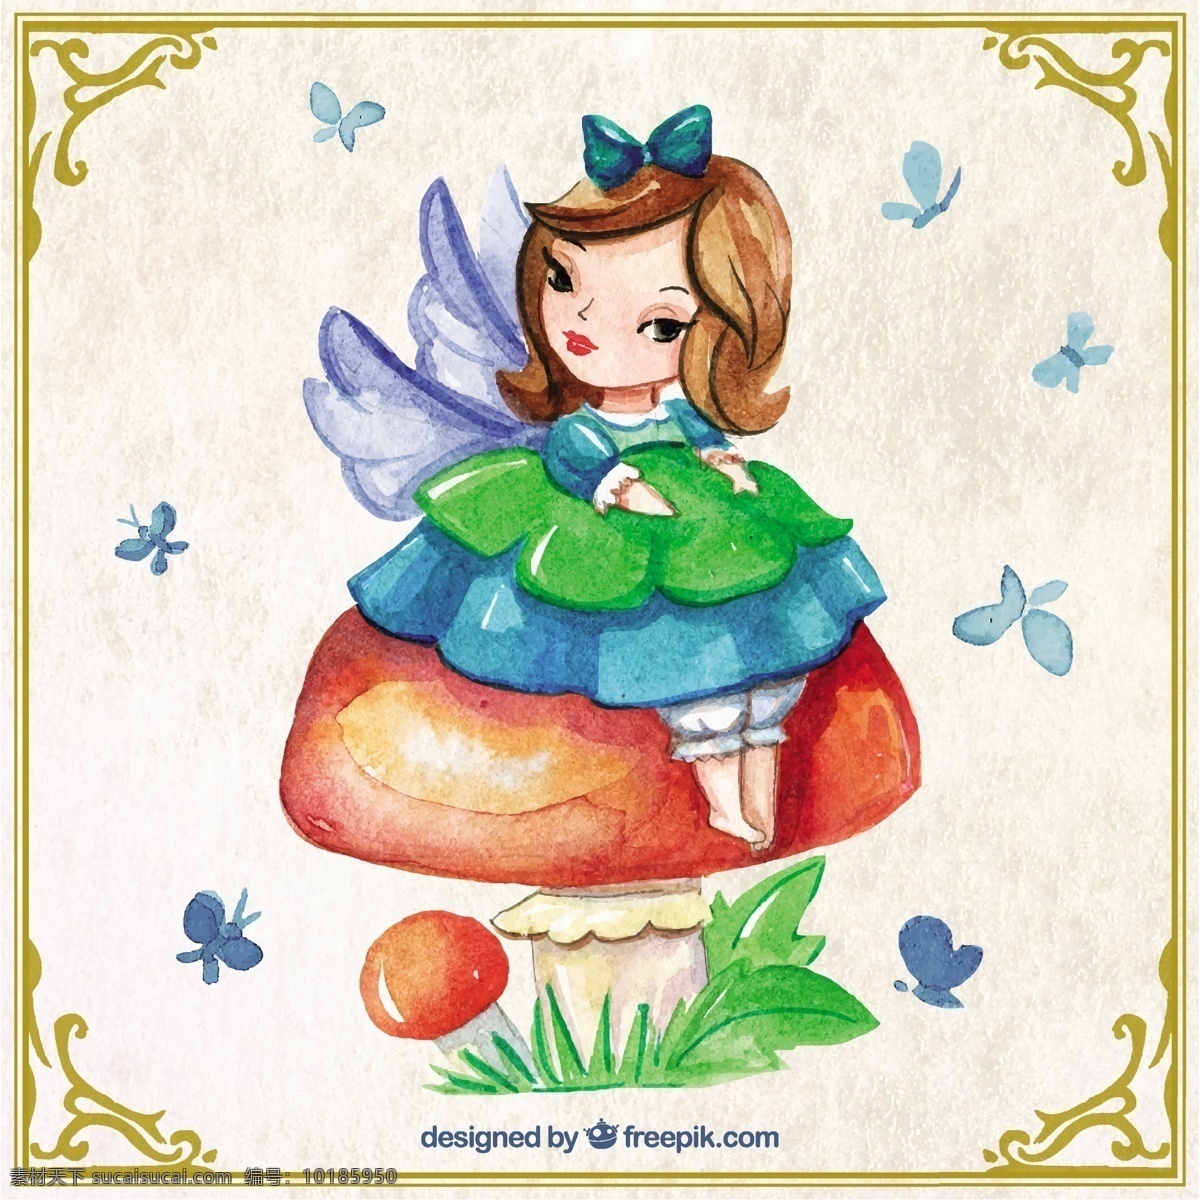 蘑菇 上 可爱 仙女 水彩 手 创意 梦想 童话 创造力 人物 幻想 想象 手绘 绘画 故事